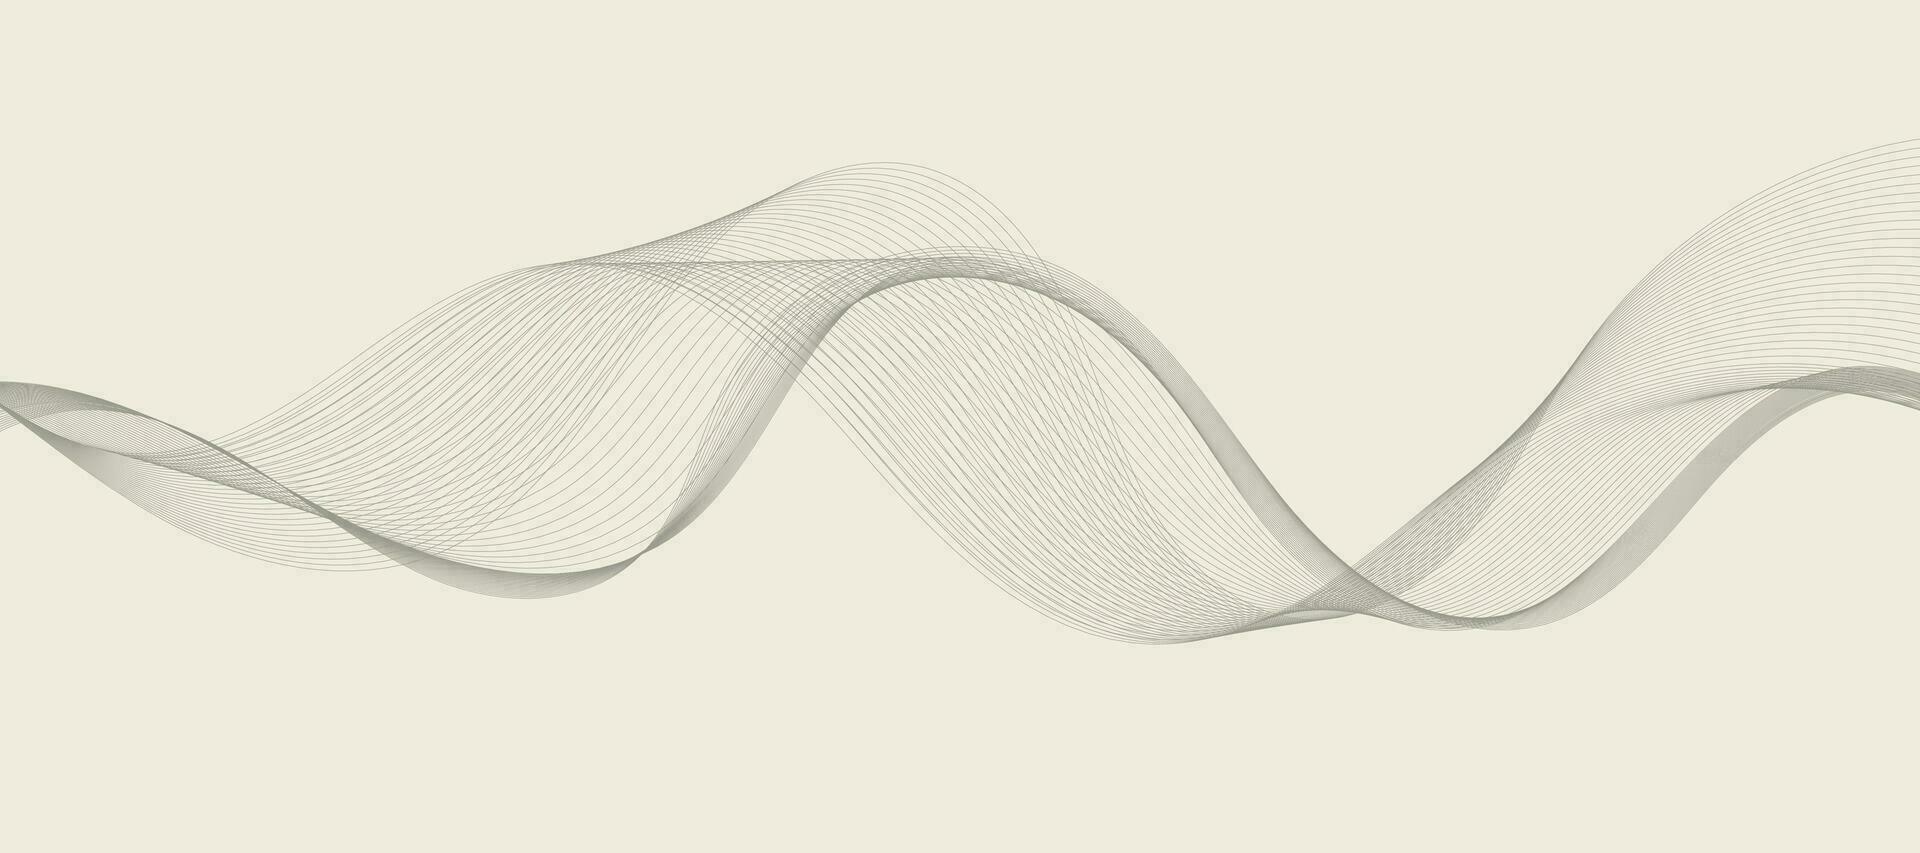 abstraktes wellenelement für design. digitaler Frequenzspur-Equalizer. stilisierte Linie Kunsthintergrund. Vektor-Illustration. Welle mit Linien, die mit dem Mischwerkzeug erstellt wurden. gebogene Wellenlinie, glatter Streifen. vektor